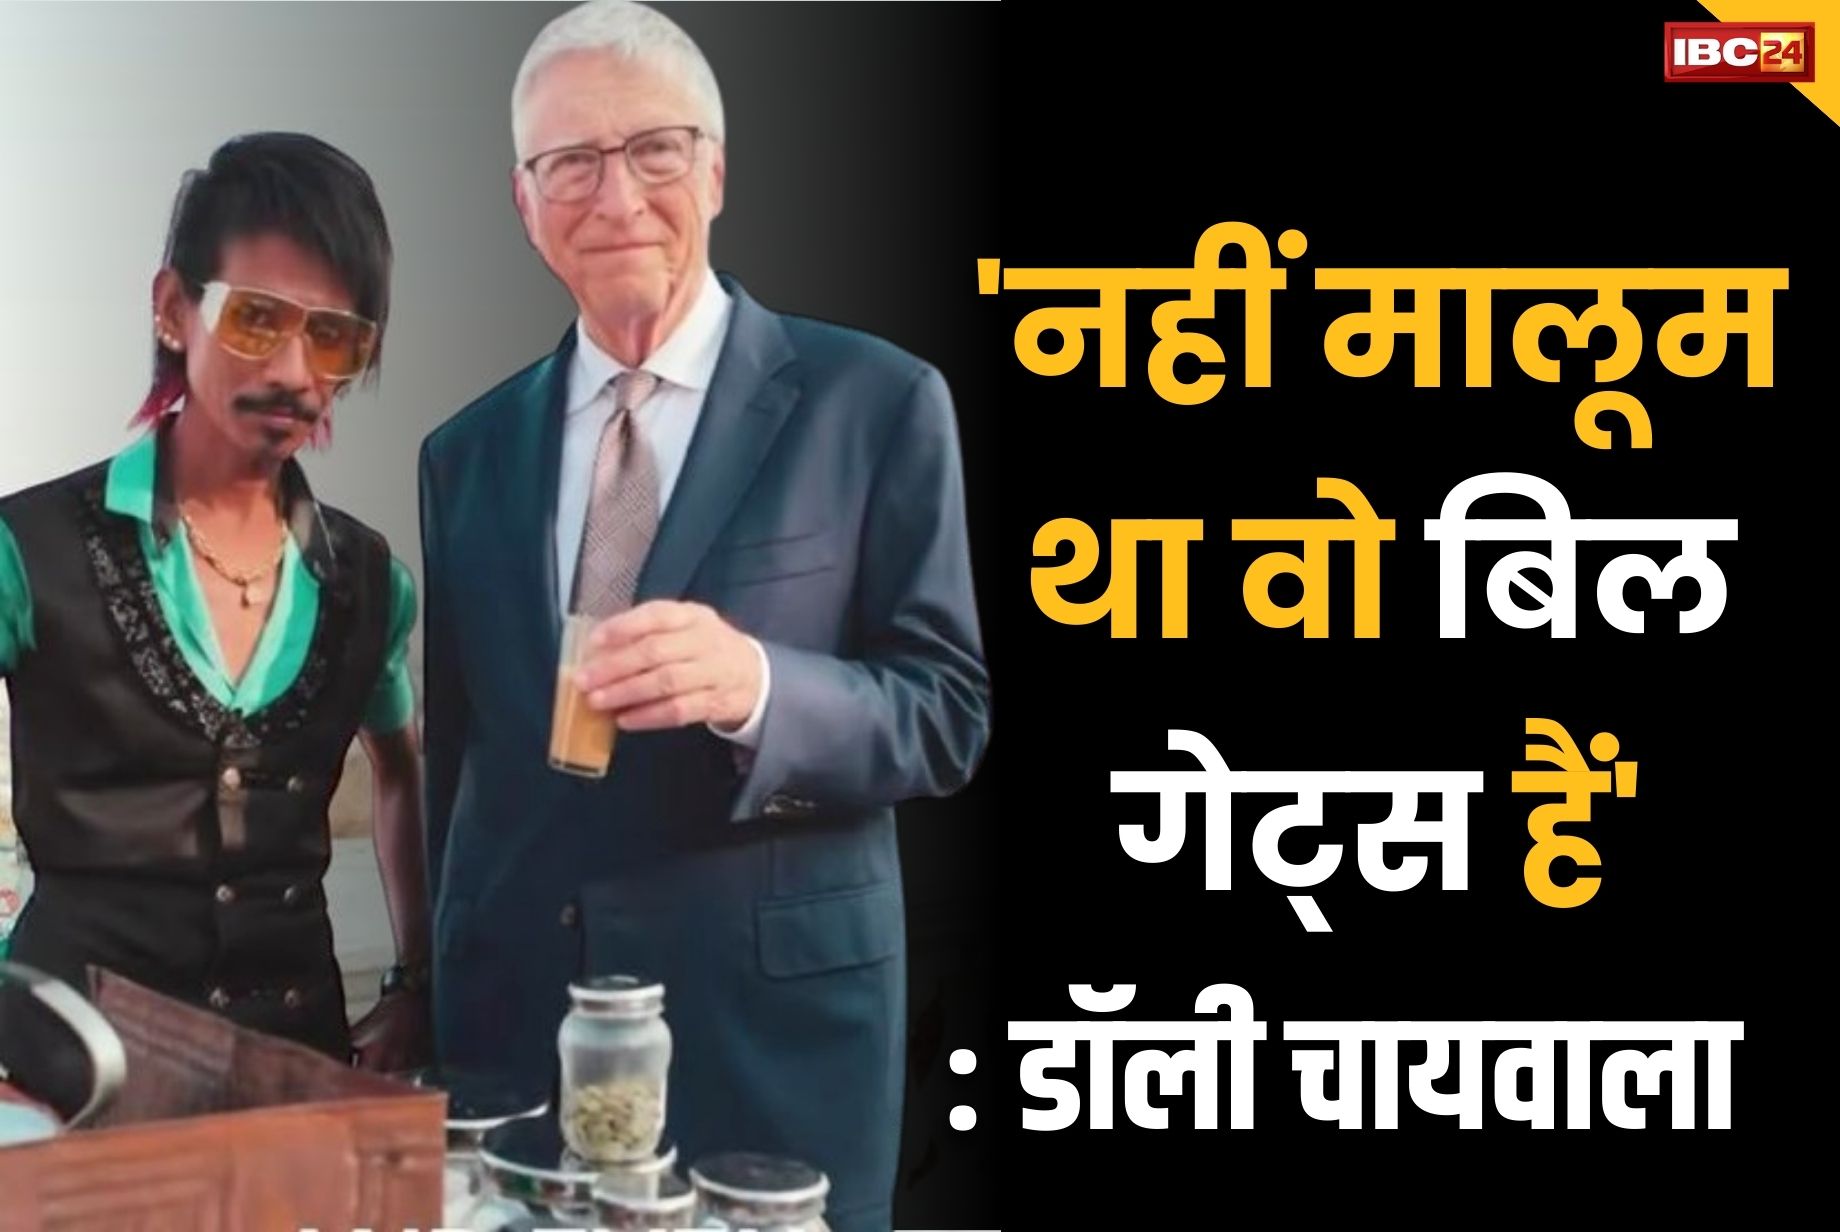 Dolly Chaiwala Latest Video: डॉली चायवाले का खुलासा.. बताया, ‘एक दिन बाद पता चला कि बिल गेट्स को चाय पिलाया’.. अब PM मोदी को पिलाना चाहते हैं चाय